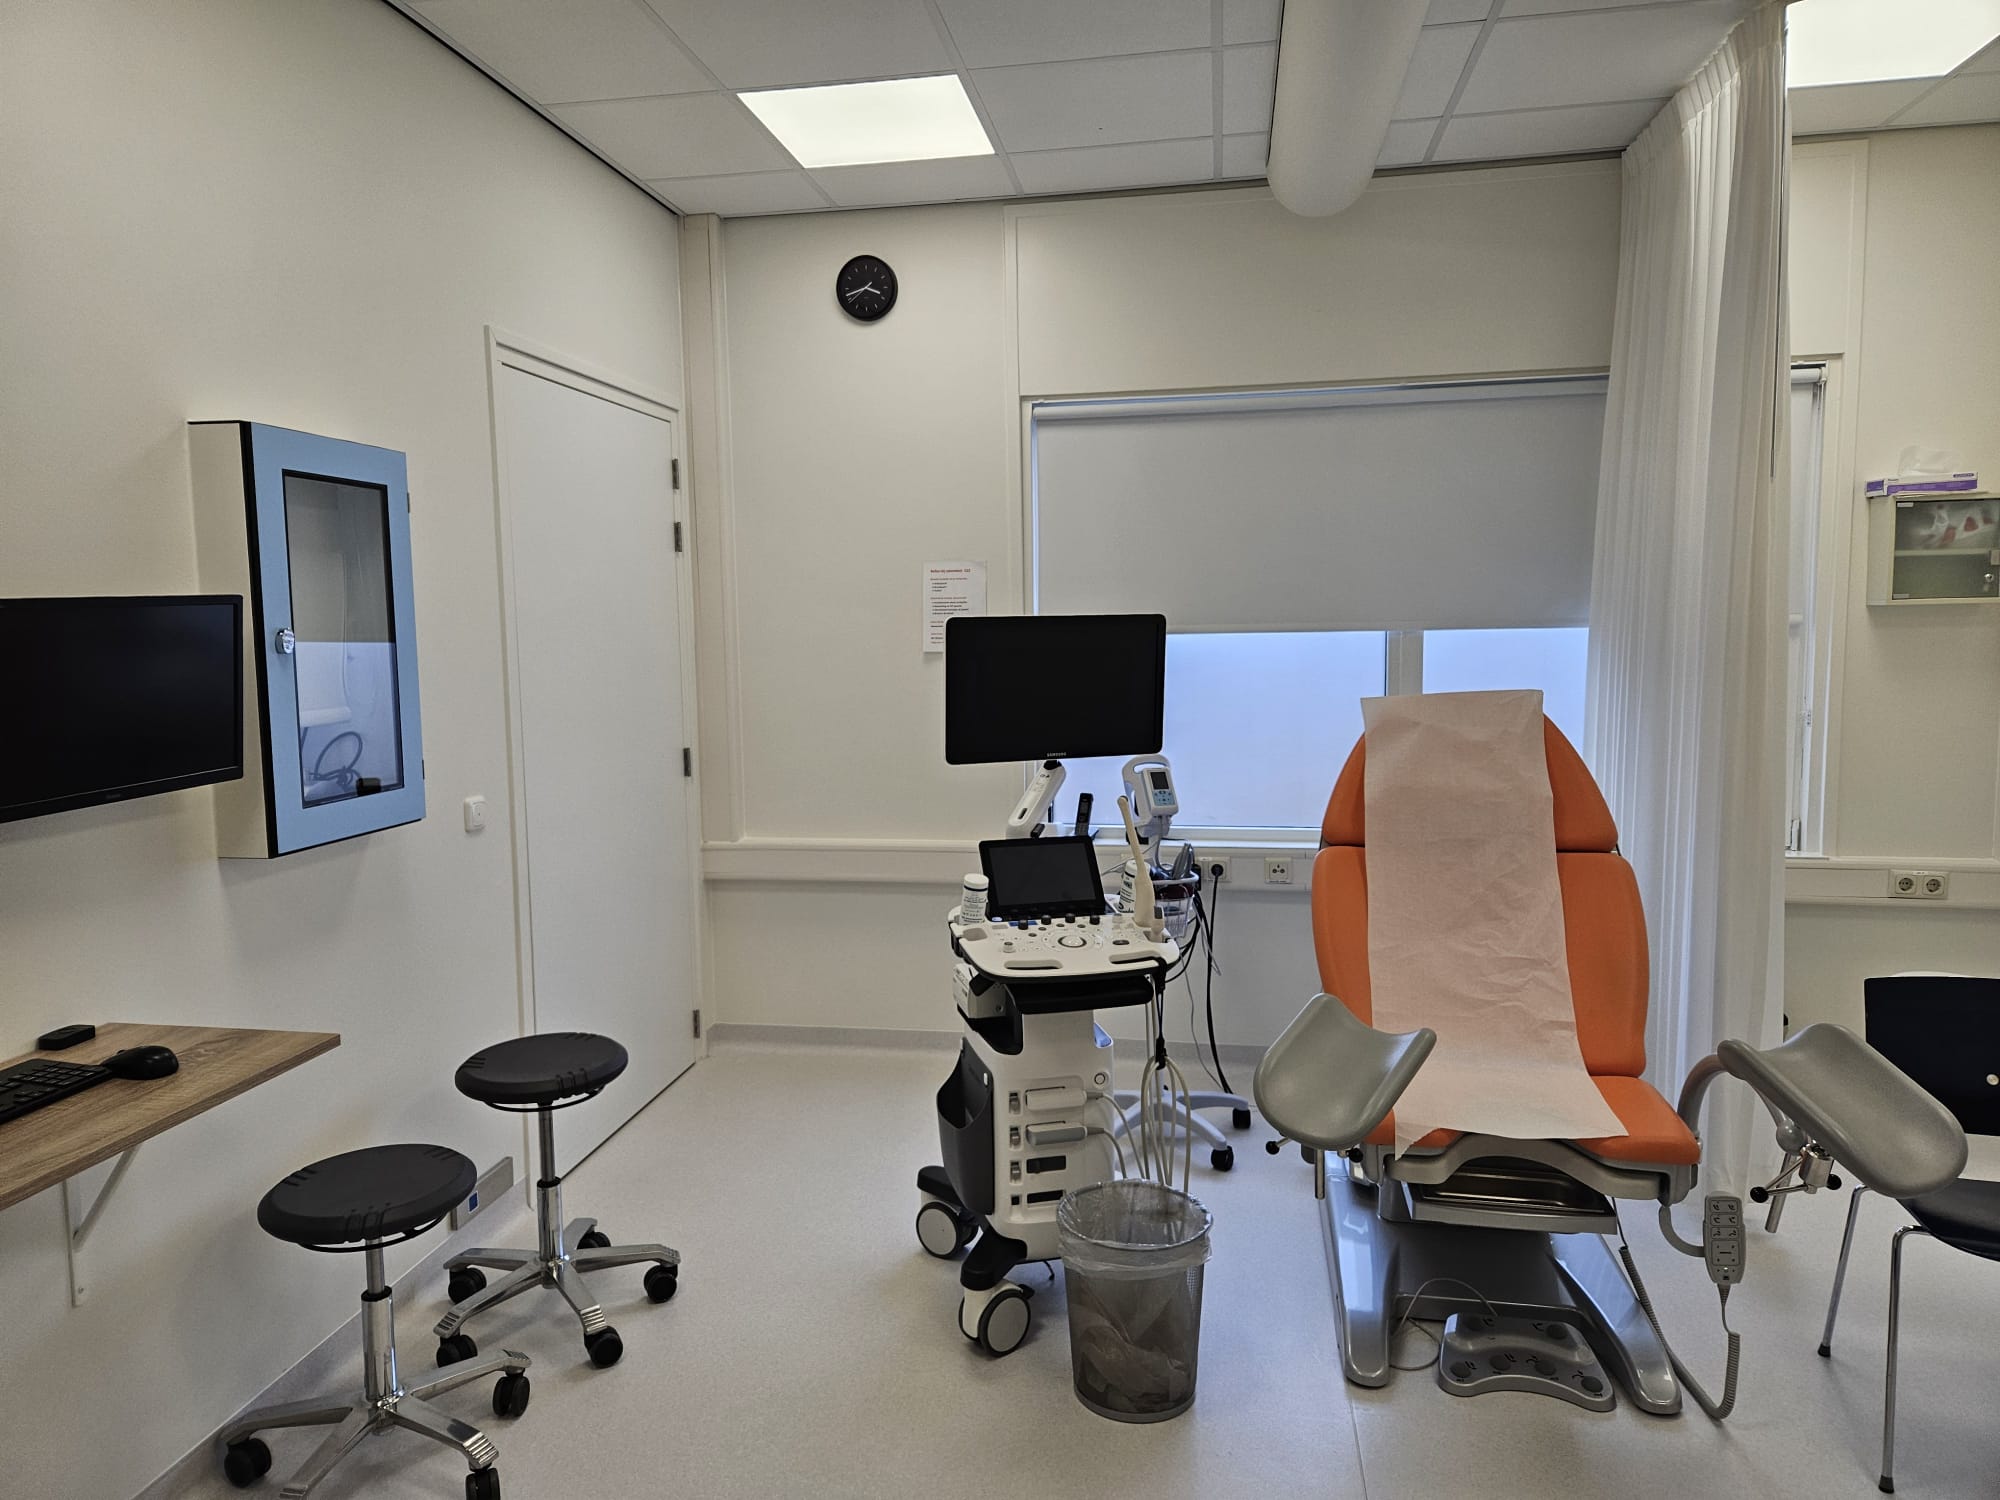 Een behandelkamer waar een follikelpunctie kan plaatsvinden